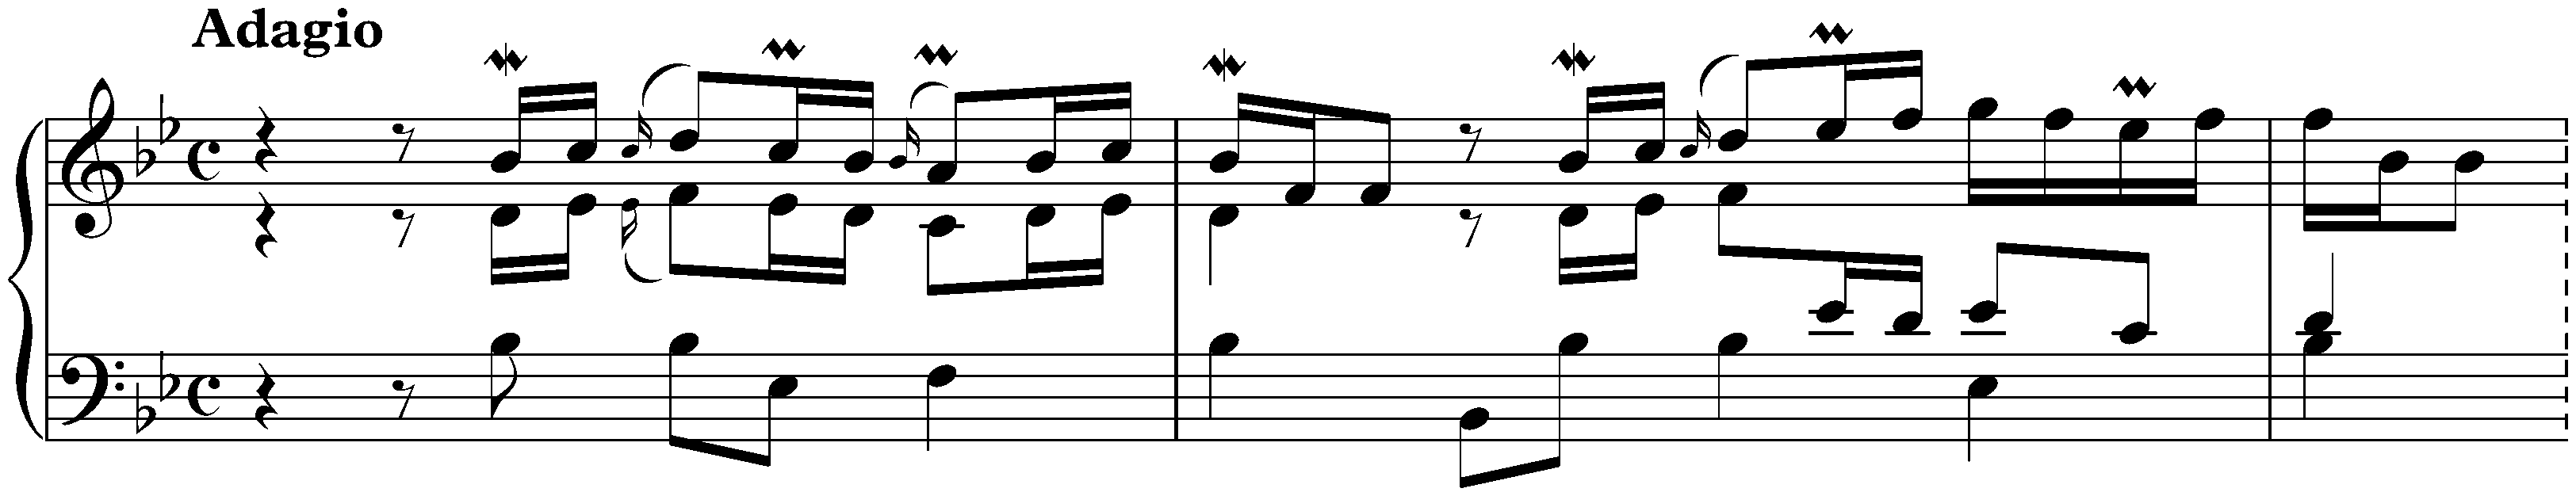 Capriccio sopra la lontananza del fratello dilettissimo in B-flat major, BWV 992; 1. Arioso: Adagio. Ist eine Schmeichelung der Freunde, um denselben von seiner Reise abzuhalten.